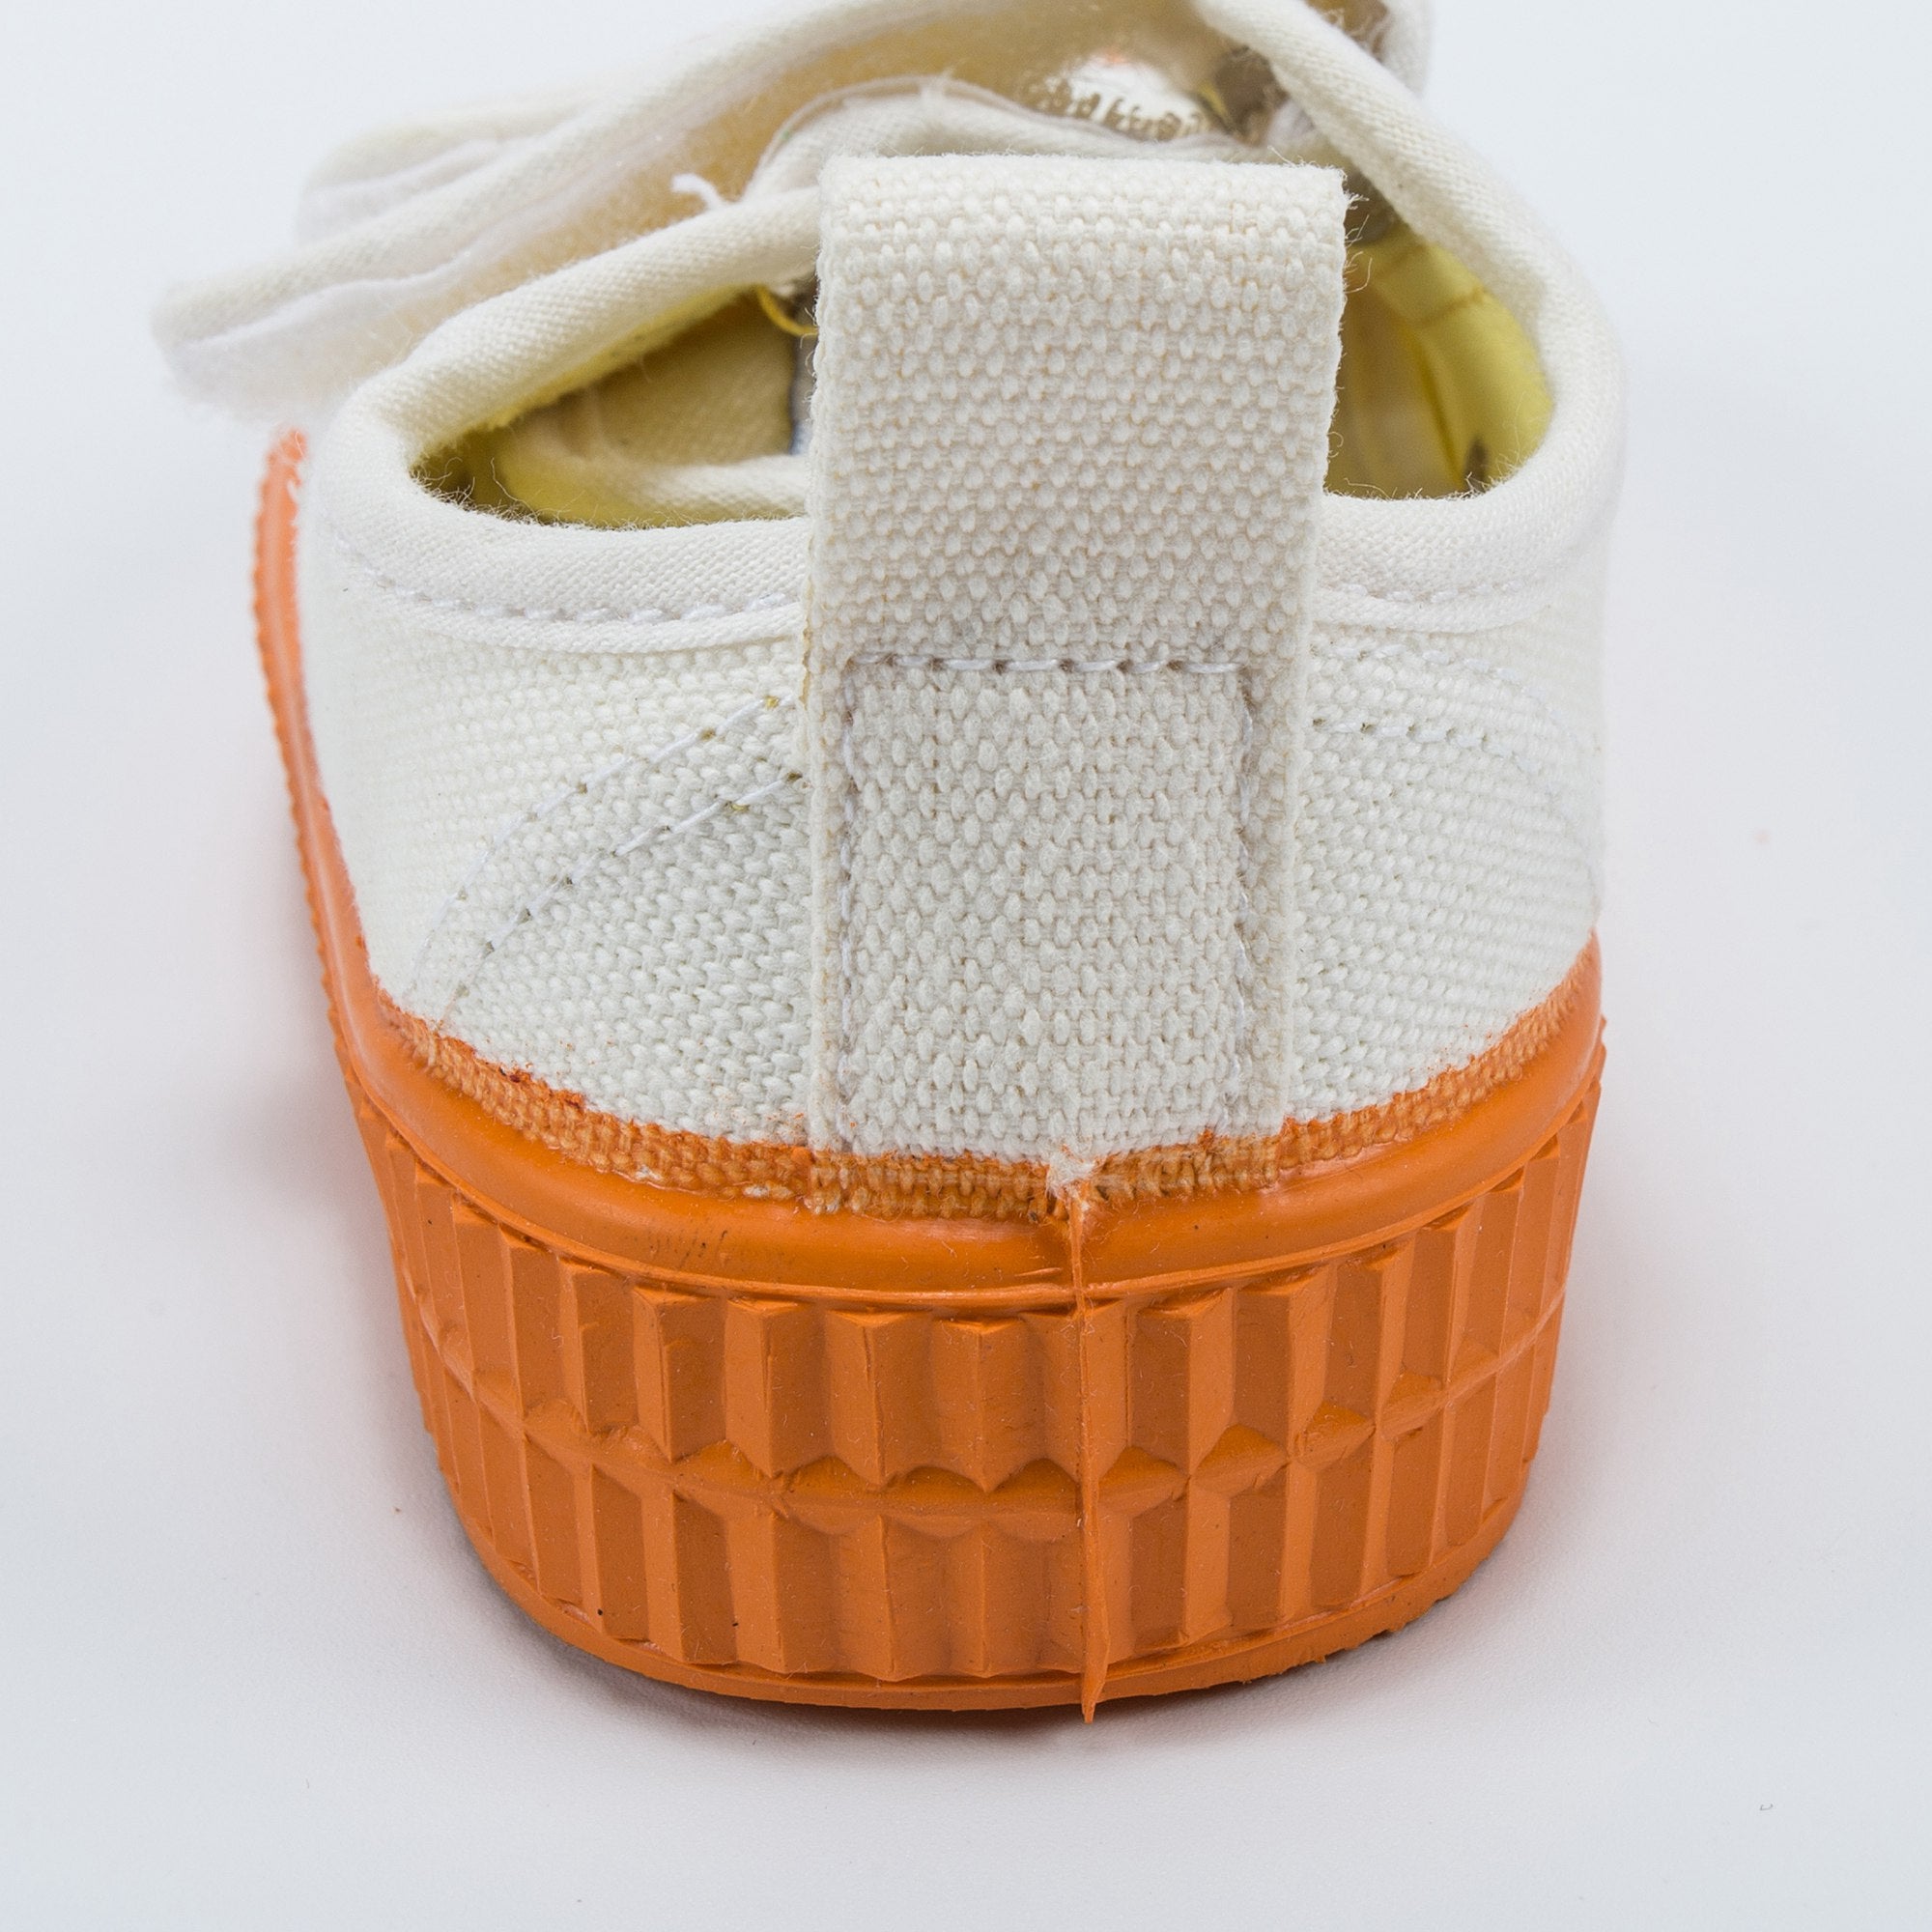 Girls White Orange Velcro Shoes